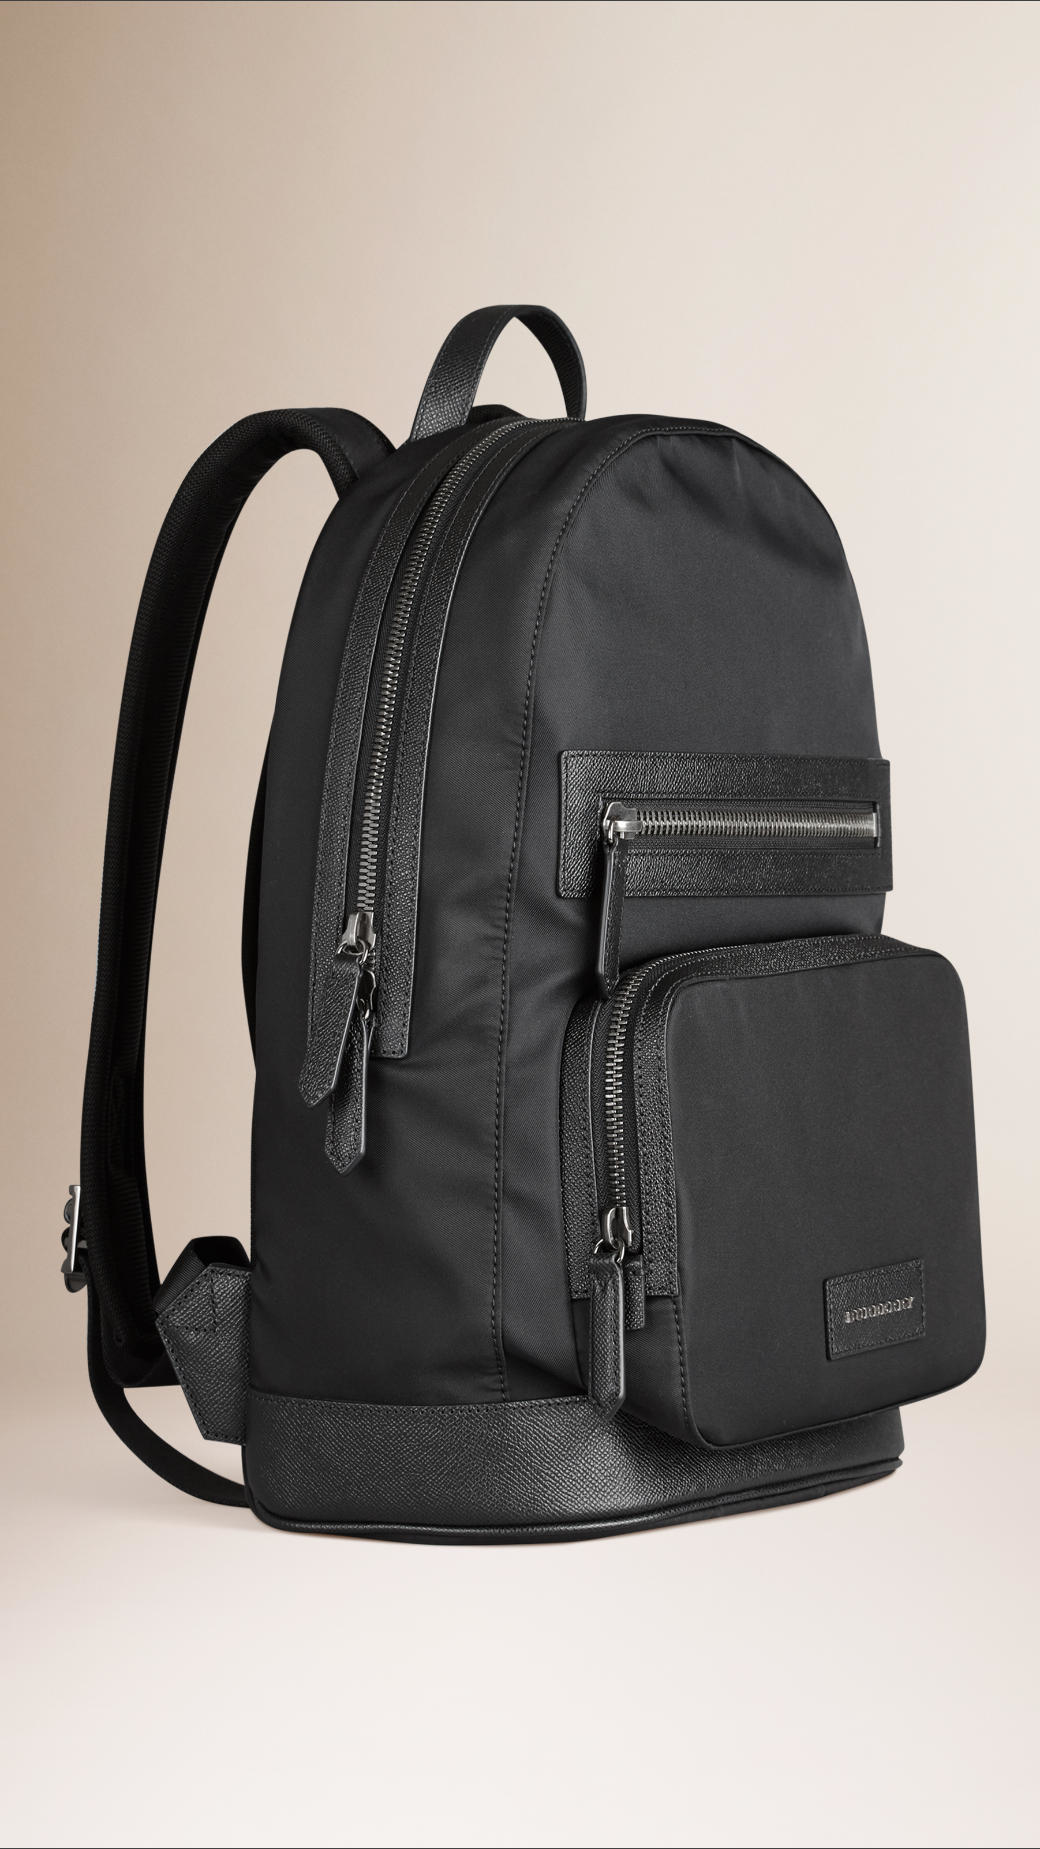 Burberry Leather Detail Nylon Backpack Black for Men - Lyst